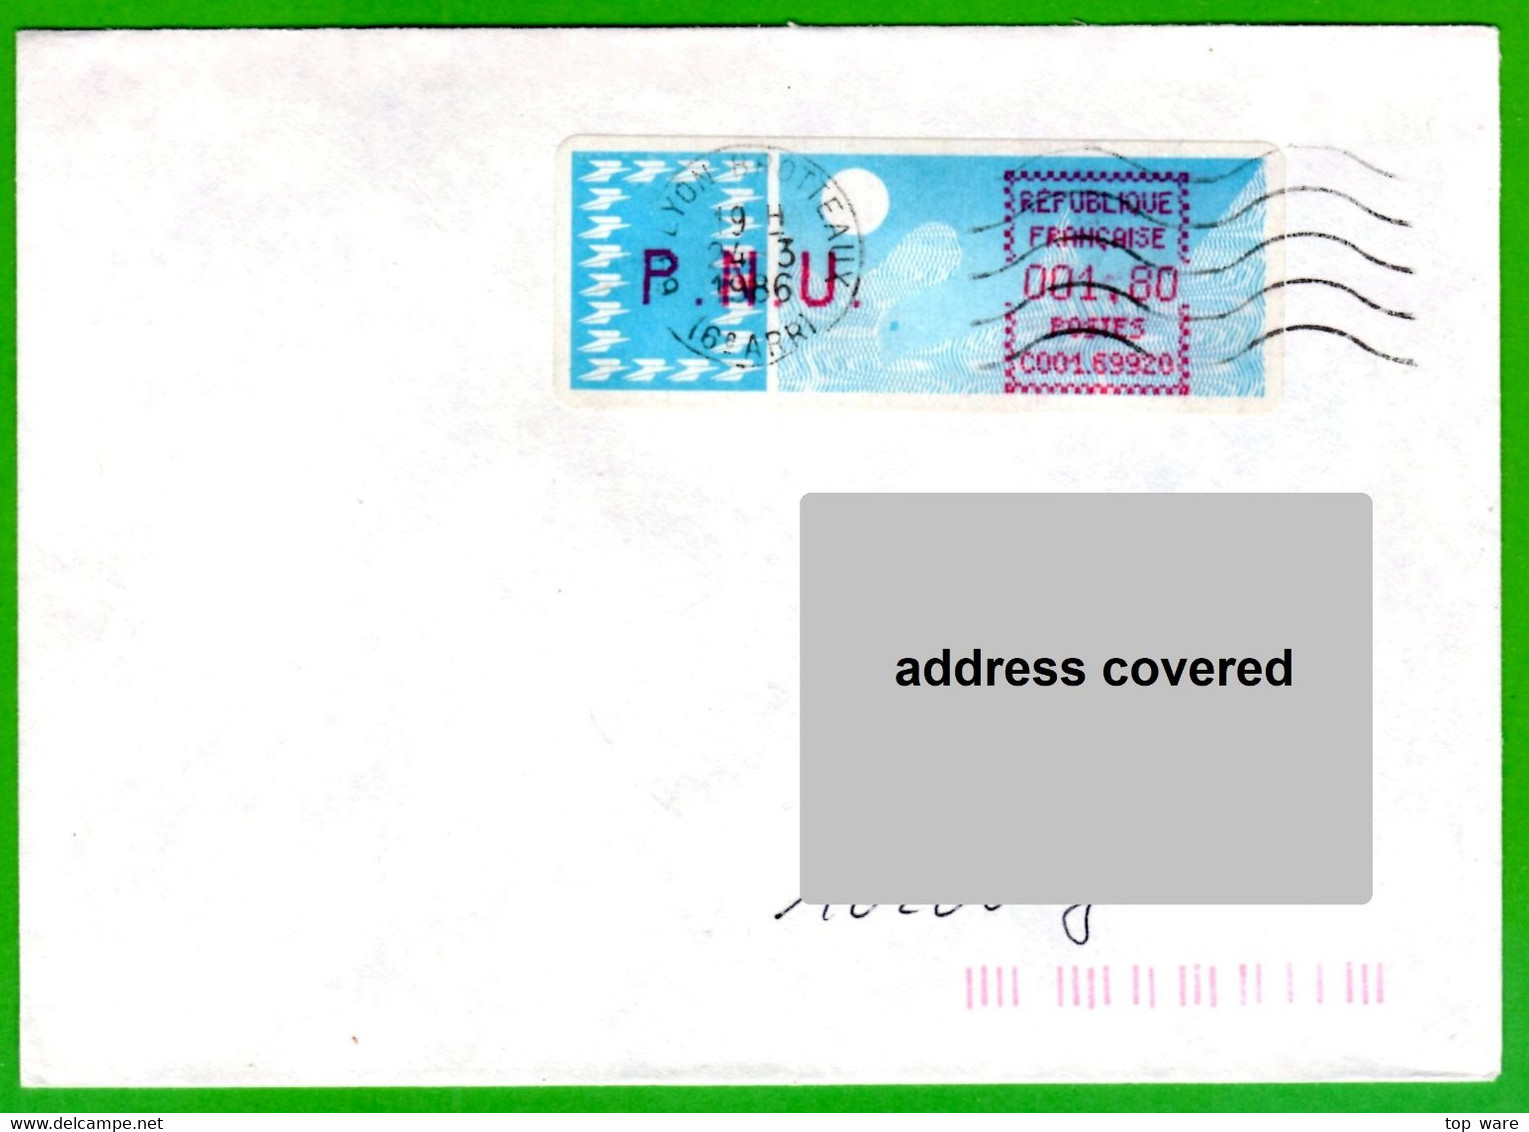 France LSA ATM Stamps C001.69920 / Michel 6.6 Zd / PNU 1,80 On Cover 24.3.86 Lyon Brotteaux / Distributeurs - 1985 Carta « Carrier »